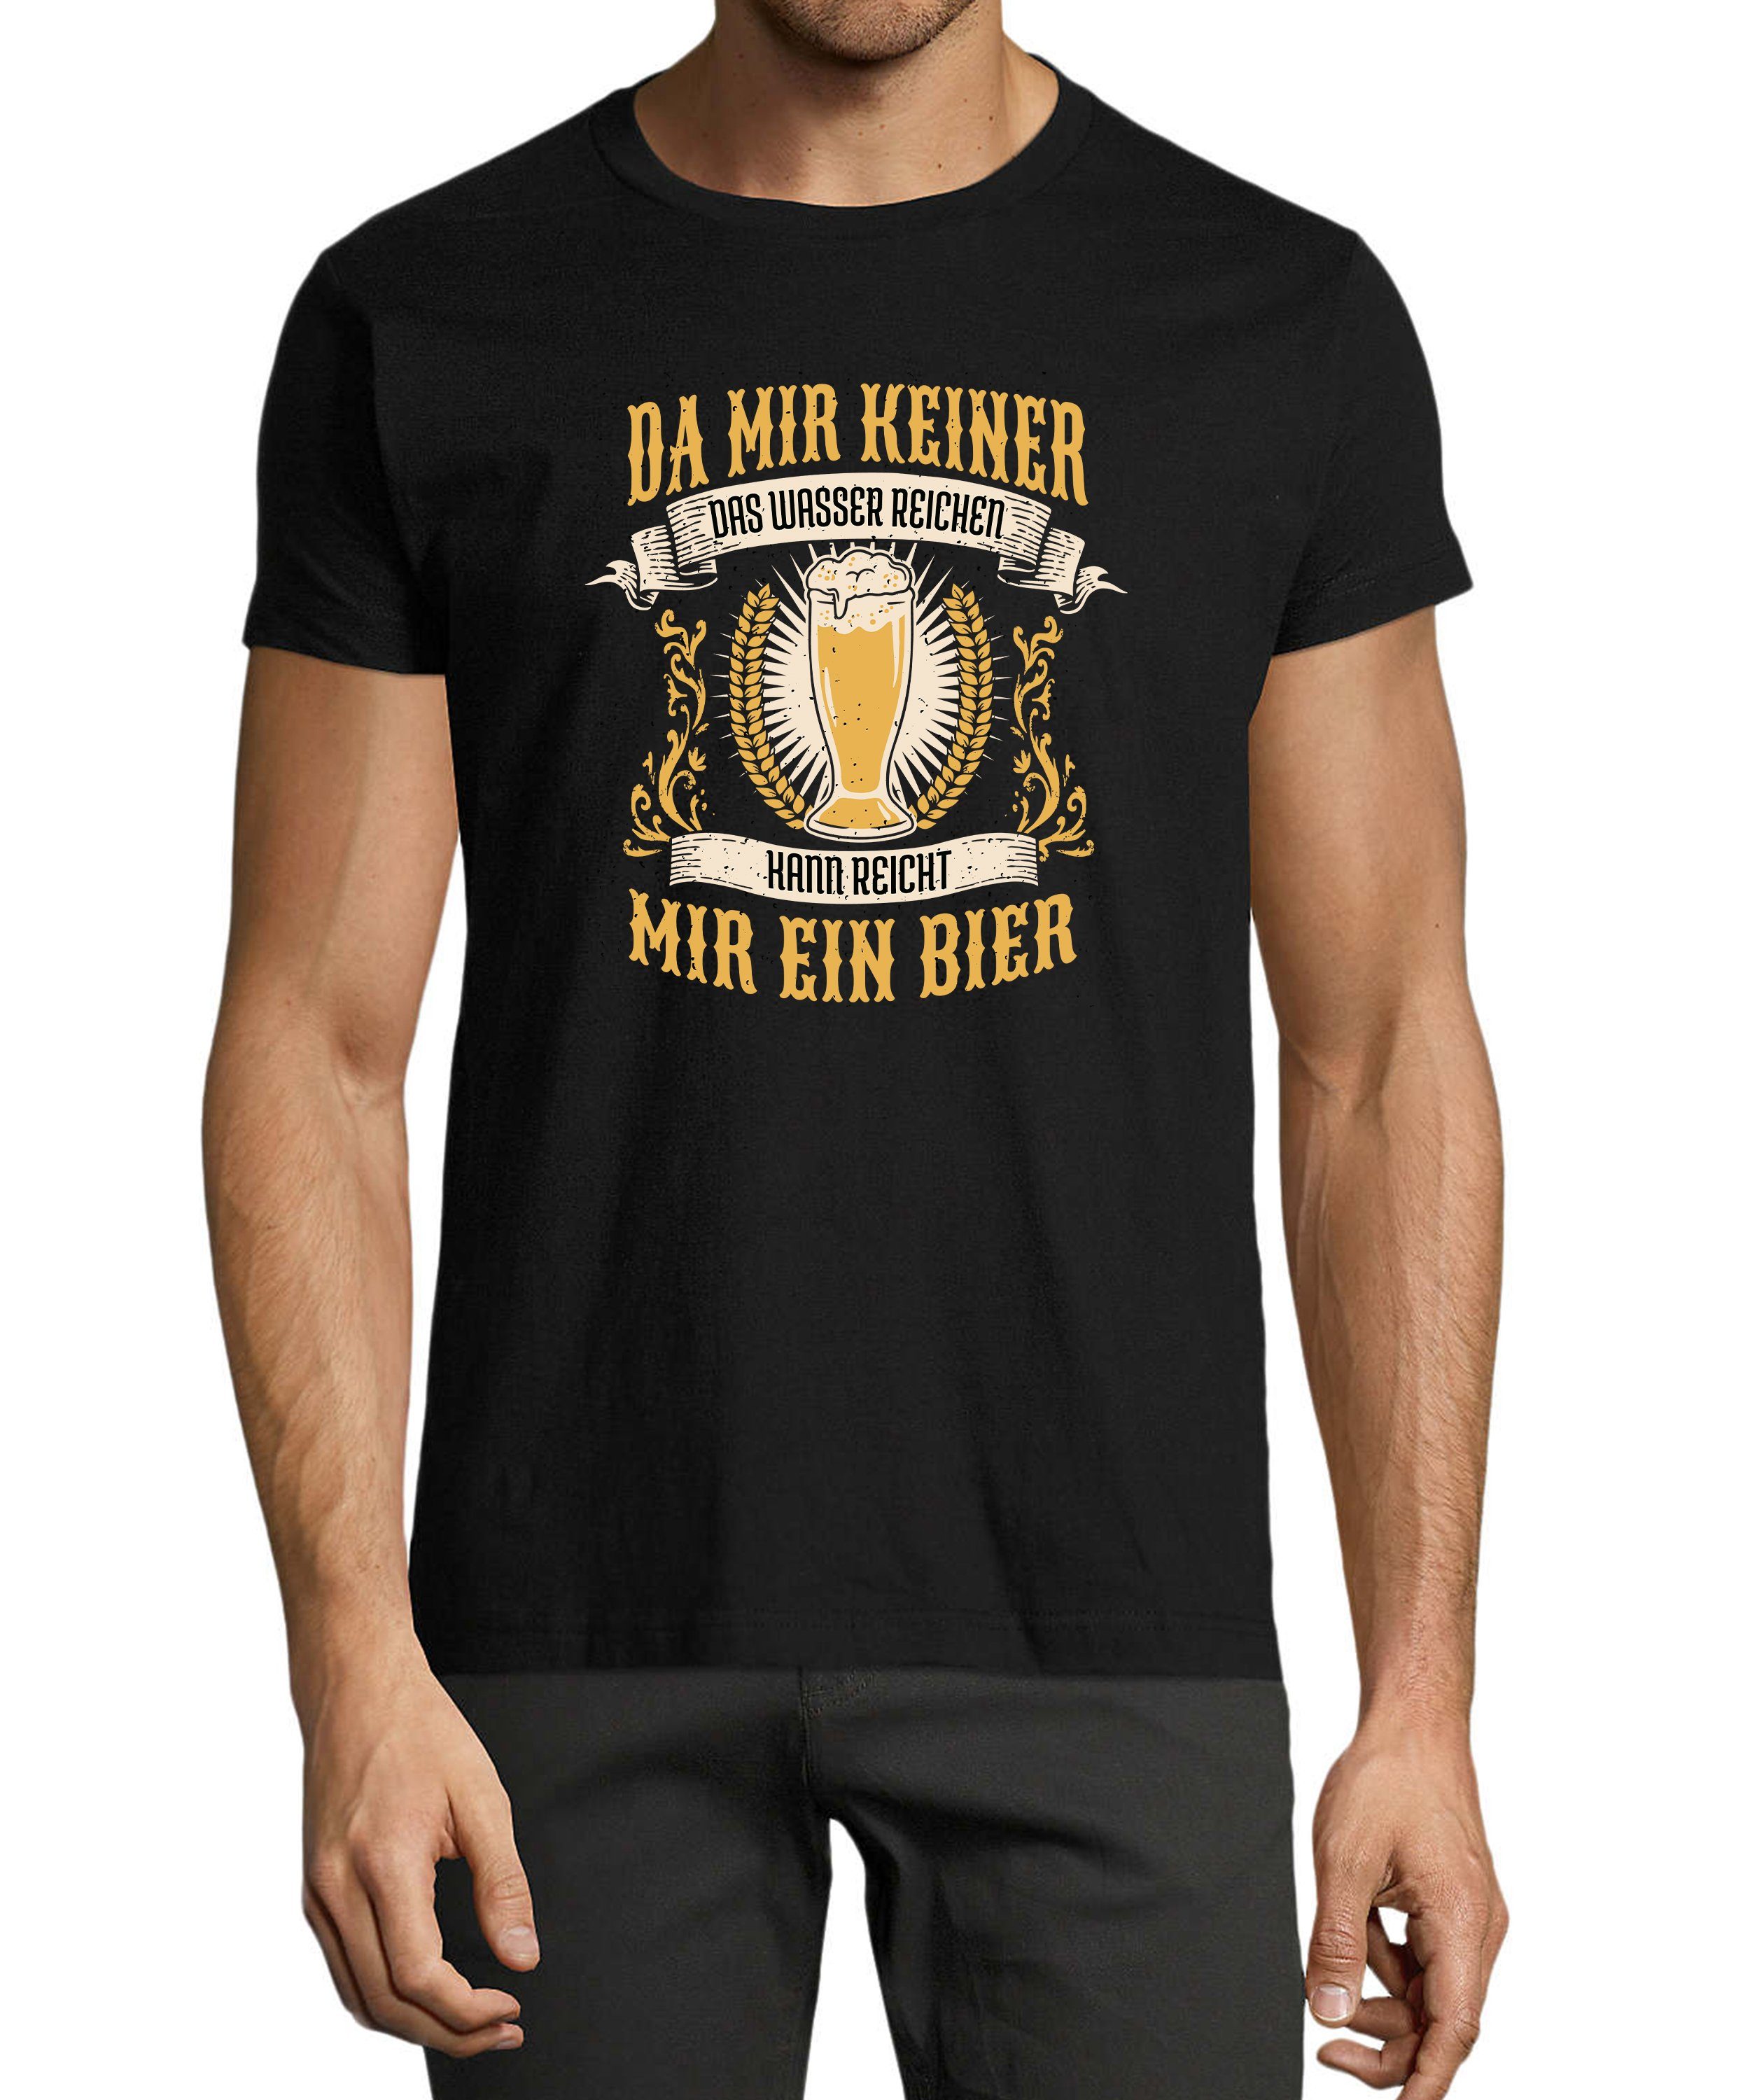 MyDesign24 T-Shirt Herren Fun Print Shirt - Oktoberfest Trinkshirt reicht mir ein Bier Baumwollshirt mit Aufdruck Regular Fit, i308 schwarz